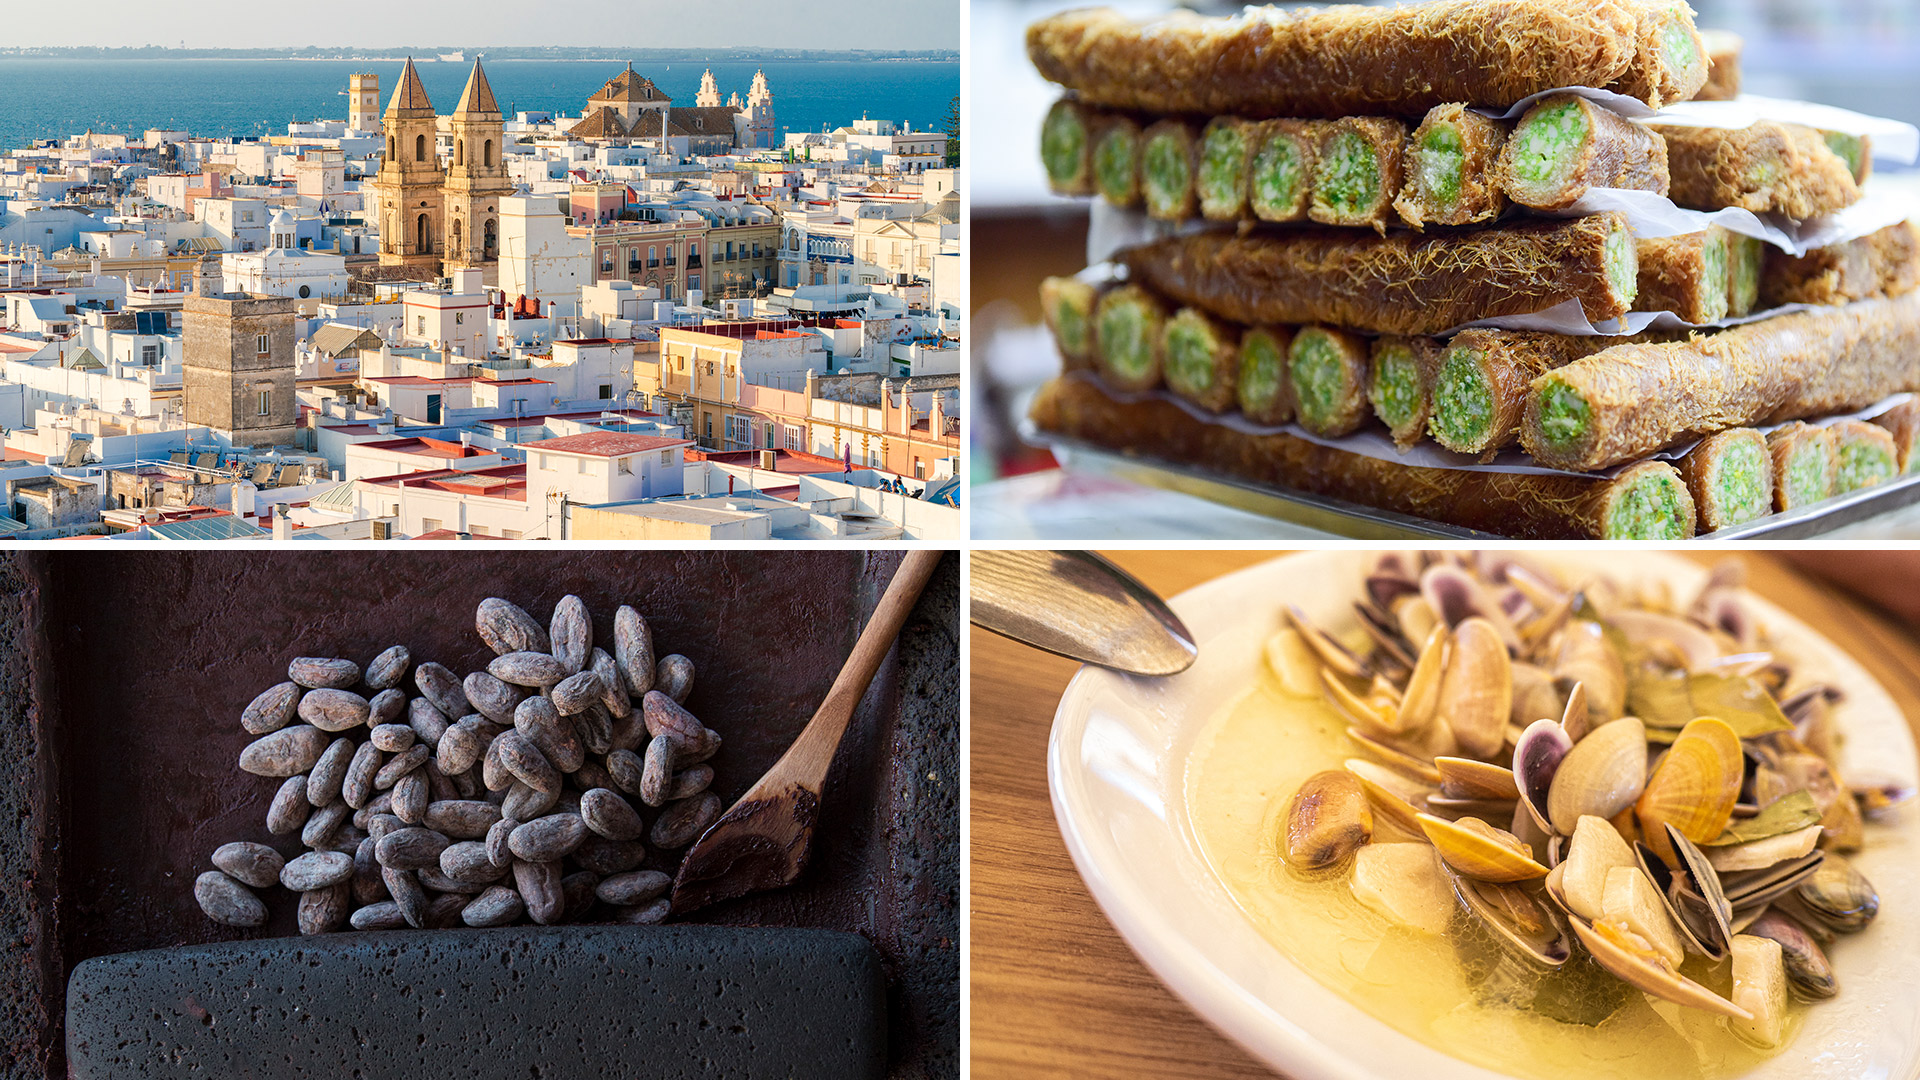 "Estos son los destinos gastronómicos mundiales que tenés que conocer”, reza la guía “The Unsung Food Destinations to Travel for Now” de la prestigiosa revista Condé Nast Traveler